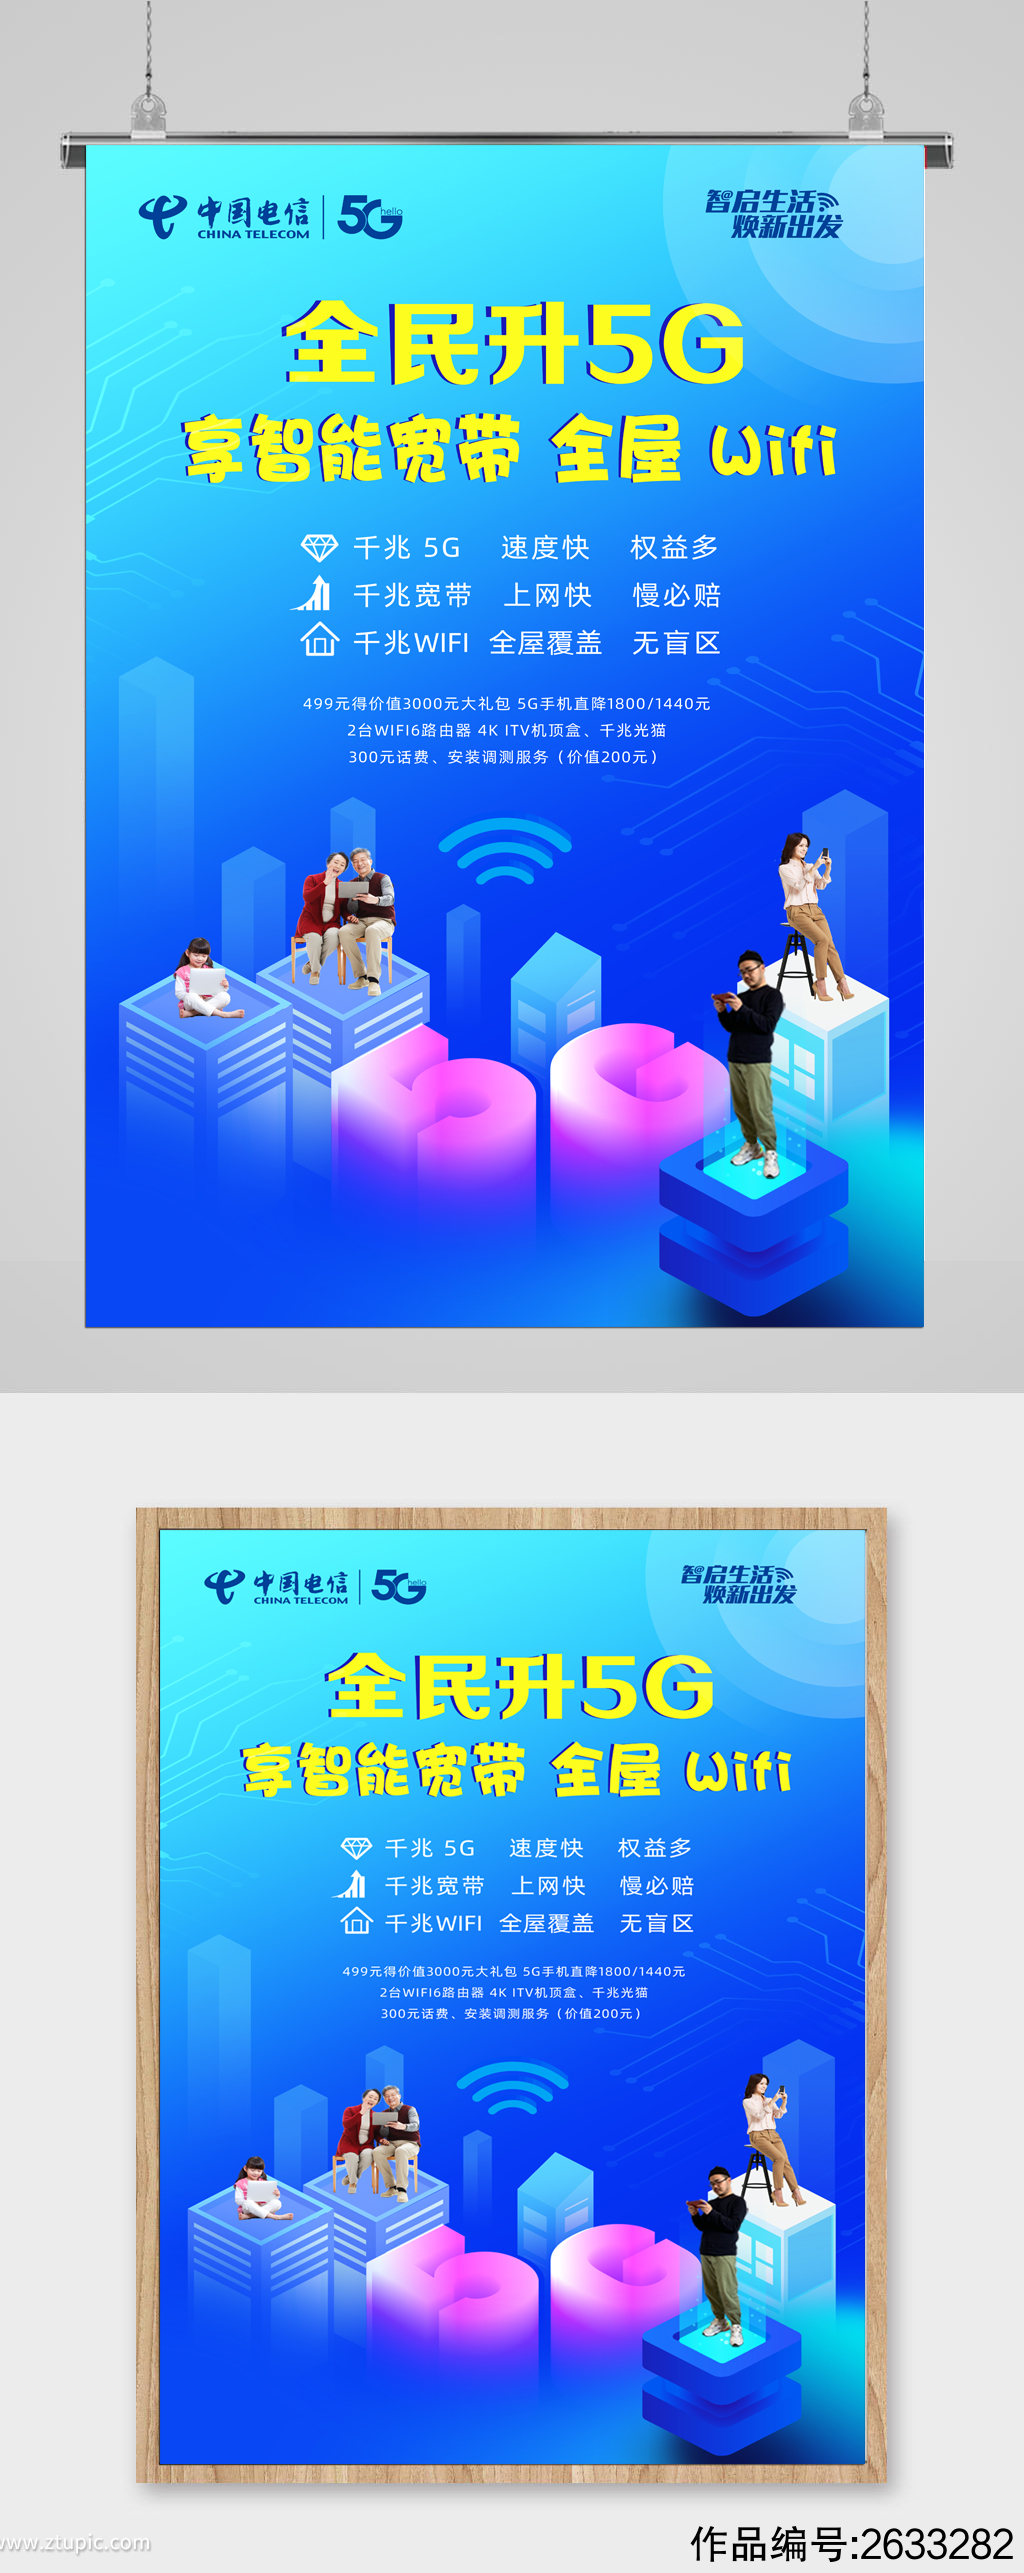 中国电信5gwifi海报宽带